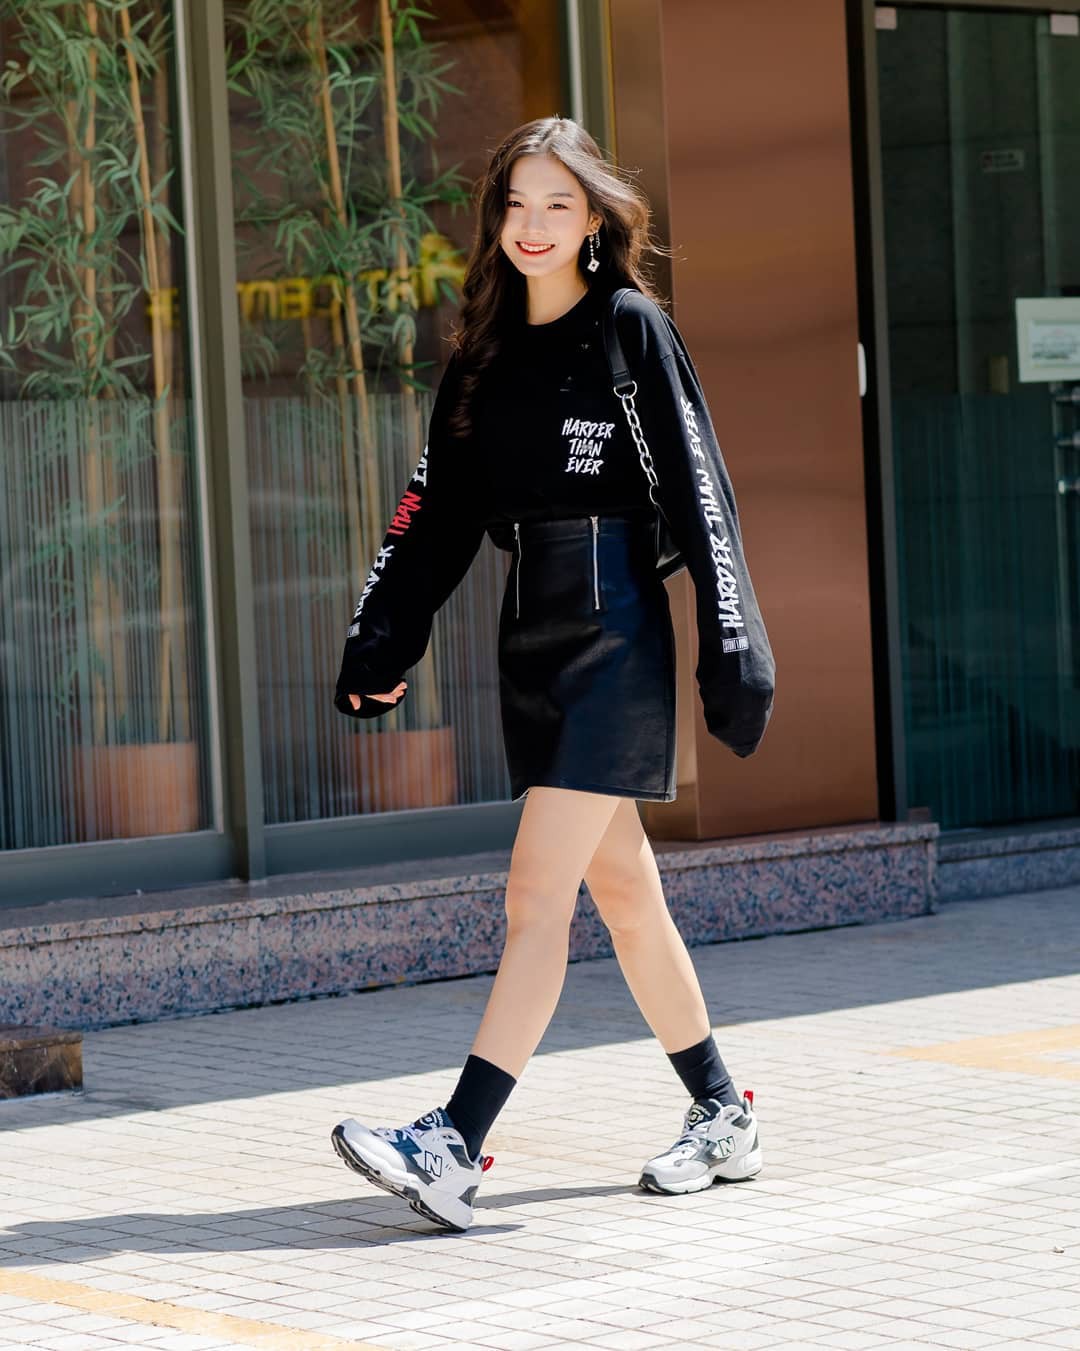 Những hình ảnh street style của con gái Hàn Quốc sẽ khiến bạn bị thu hút ngay tức khắc. Họ là những cô nàng trẻ trung, sành điệu và rất ưa chuộng những trang phục cá tính, tạo nên phong cách đầy ấn tượng. Hãy cùng chiêm ngưỡng chúng và khám phá những điểm độc đáo của phong cách Hàn.